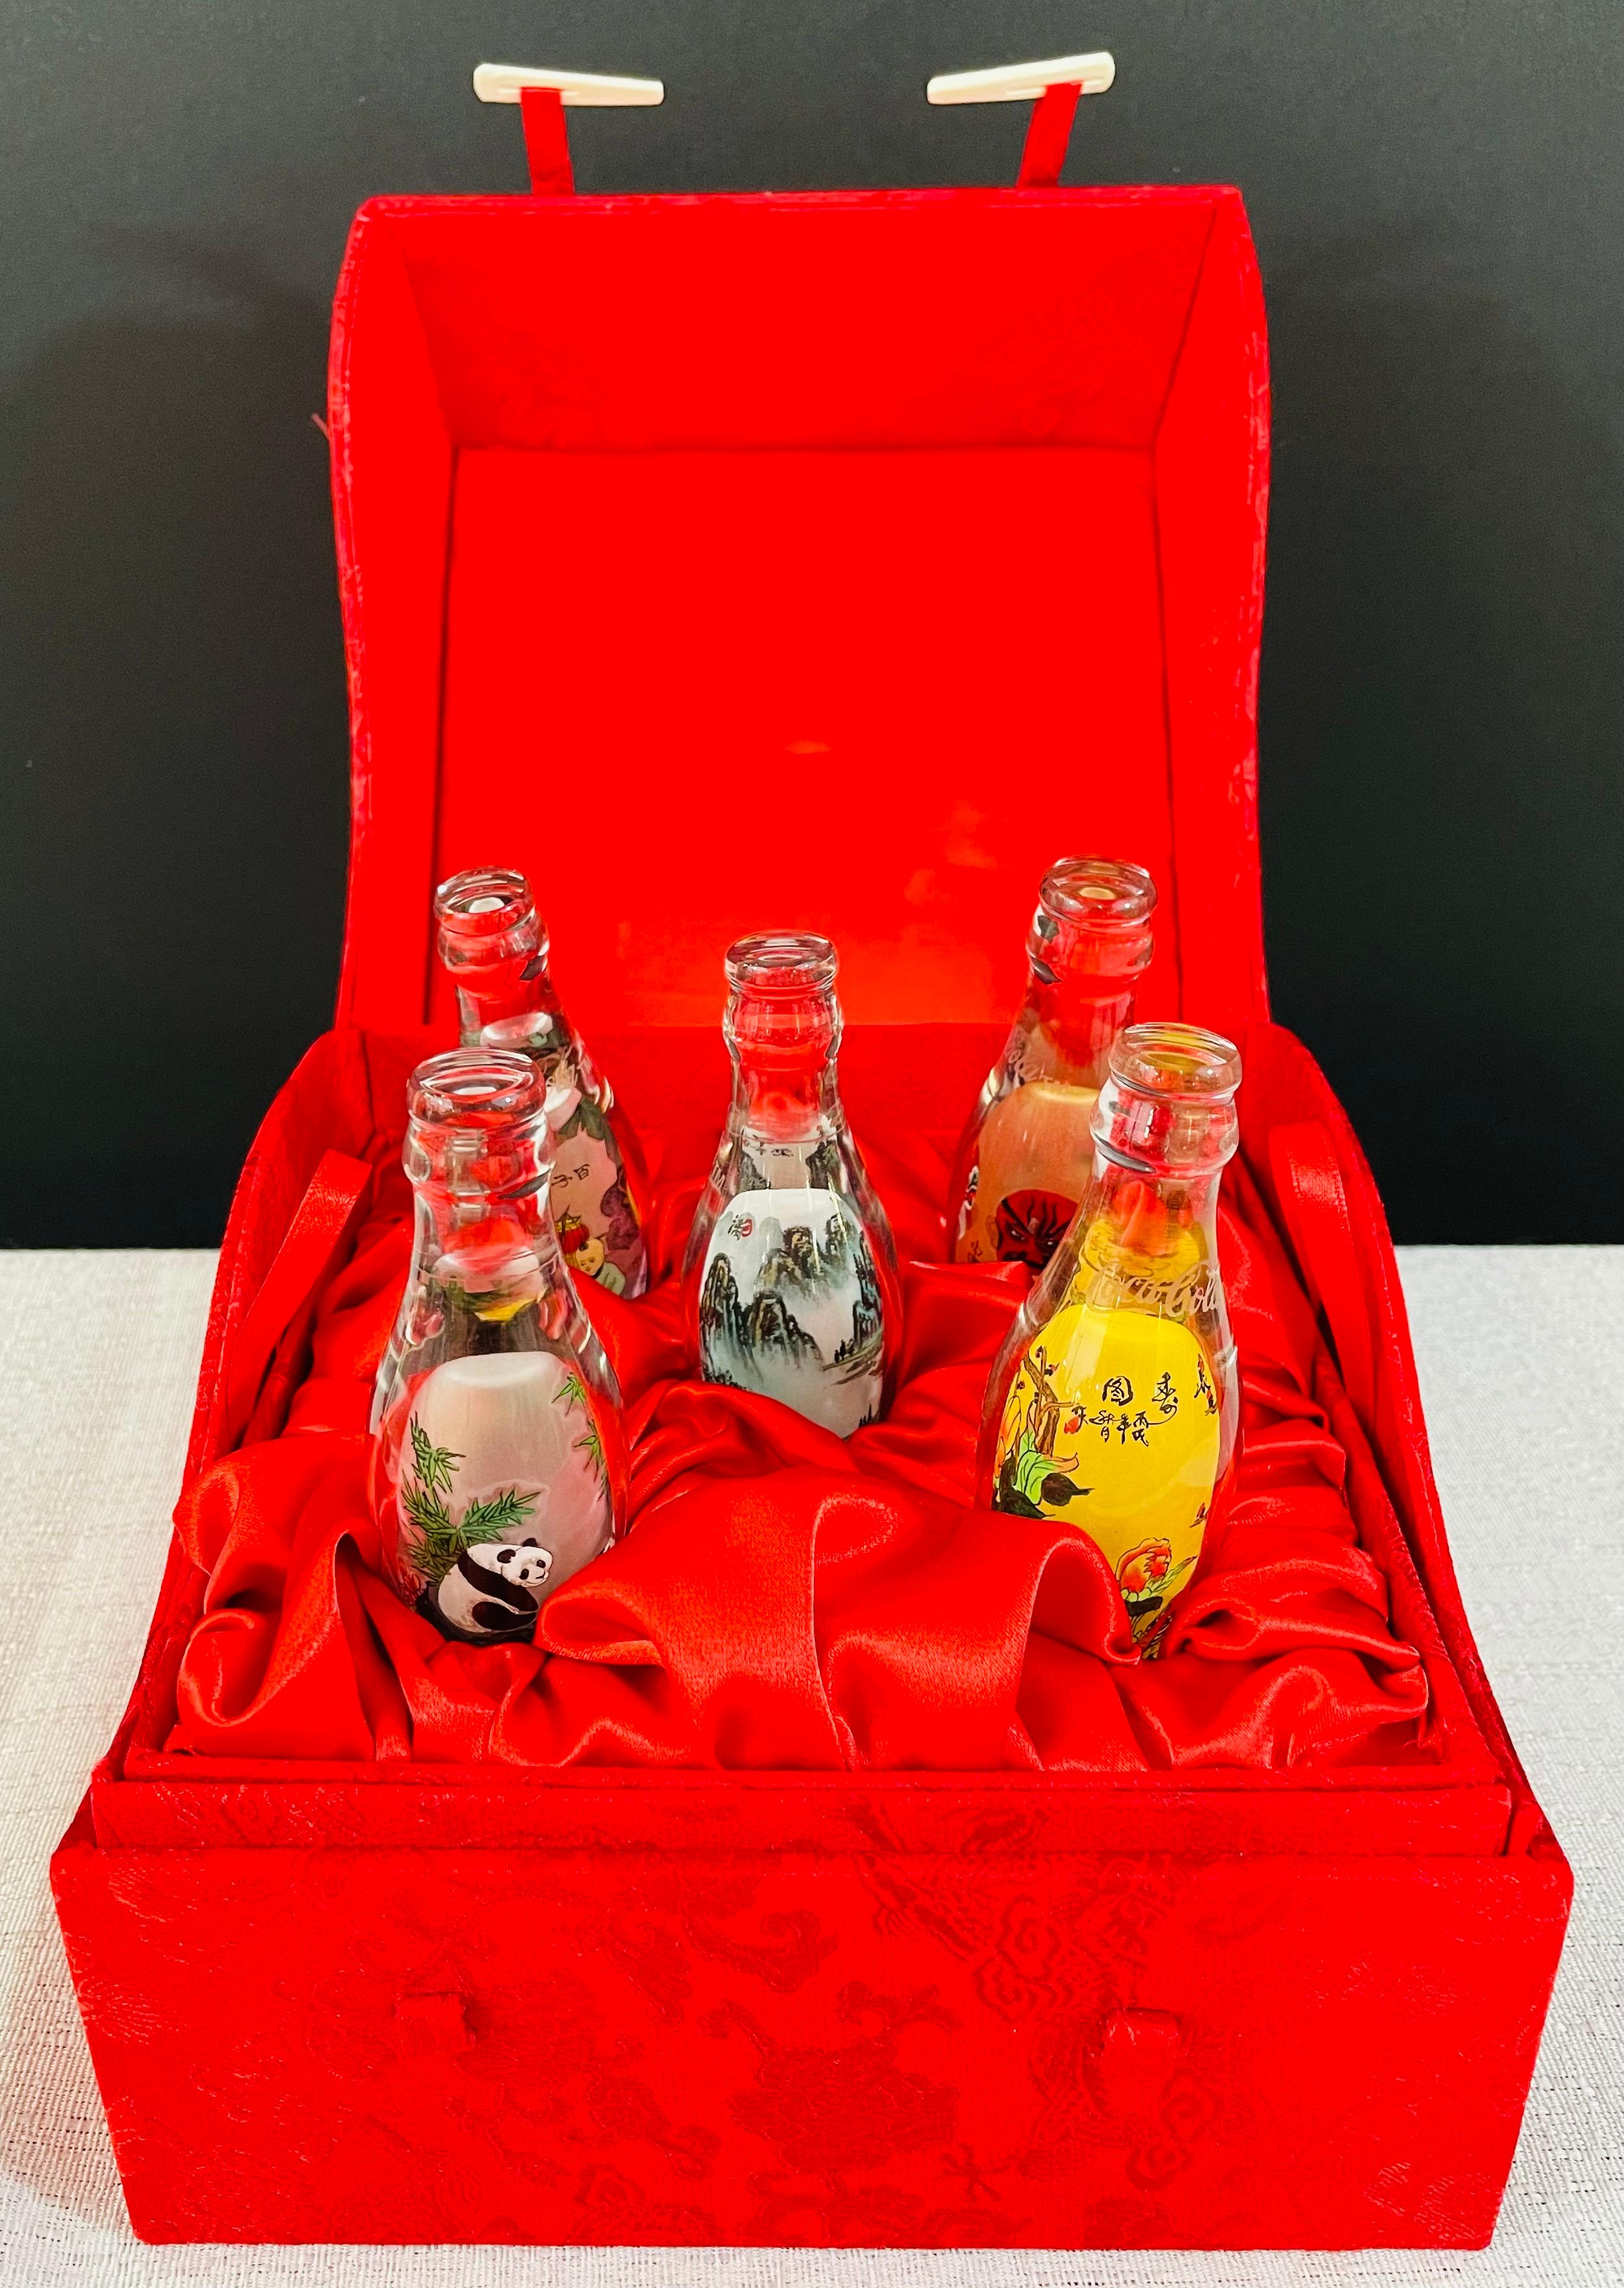 Ein speziell angefertigtes Coca-Cola-Sondermodell mit 5 Miniatur-Glasflaschen. Jede Flasche wird von Hand bedruckt, um traditionelle chinesische Embleme wie Masken, florale und figurale Motive, Pandas und Landschaften darzustellen. Die Flaschen